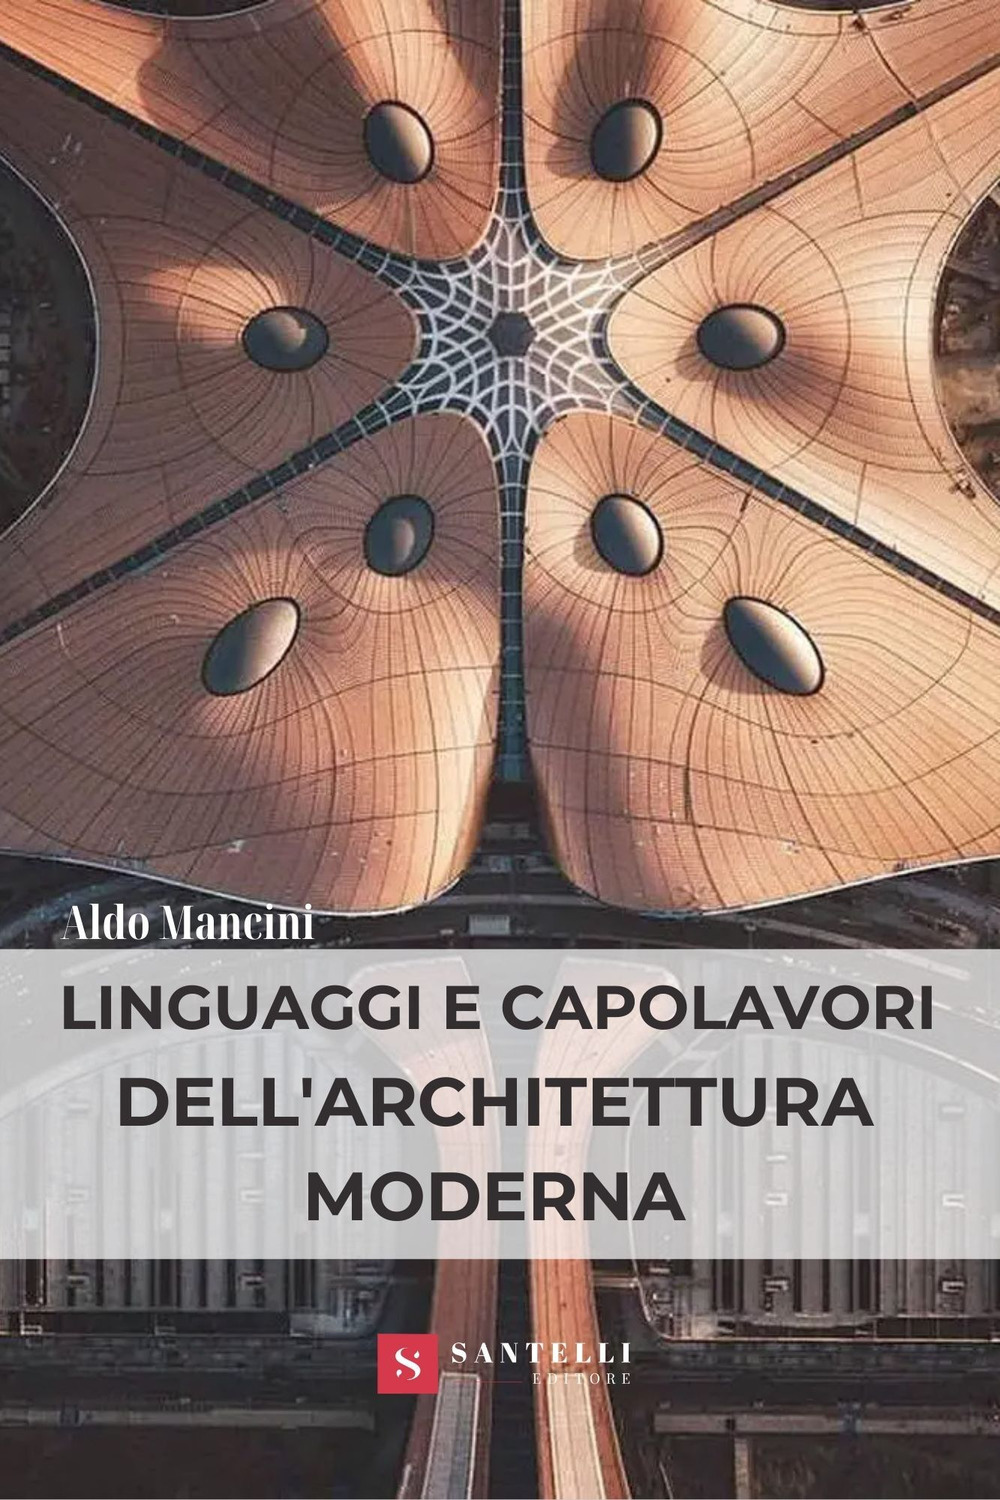 Libri Aldo Mancini - Linguaggi E Capolavori Dell'architettura Moderna NUOVO SIGILLATO, EDIZIONE DEL 28/10/2021 SUBITO DISPONIBILE